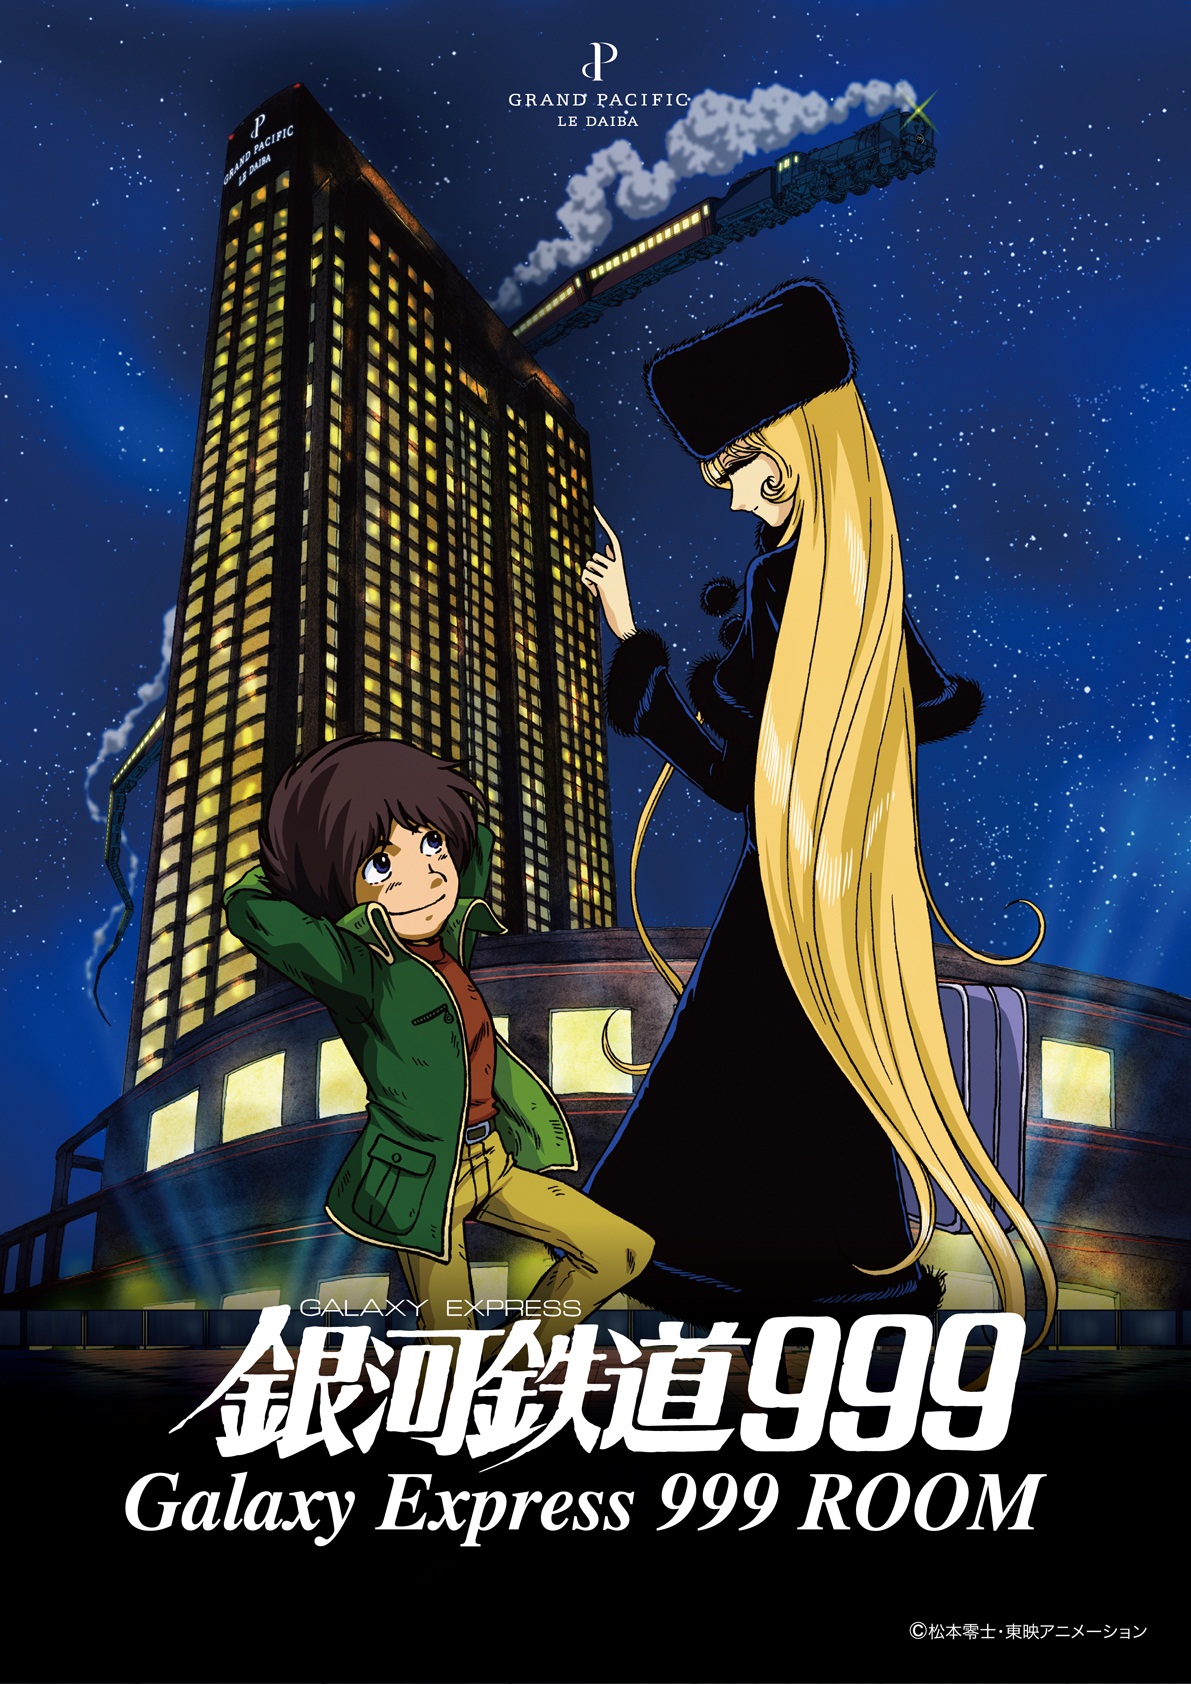 ホテルグランパシフィックle Daiba 劇場版 銀河鉄道999 コンセプトルームを展開 株式会社ジェイティービーのプレスリリース